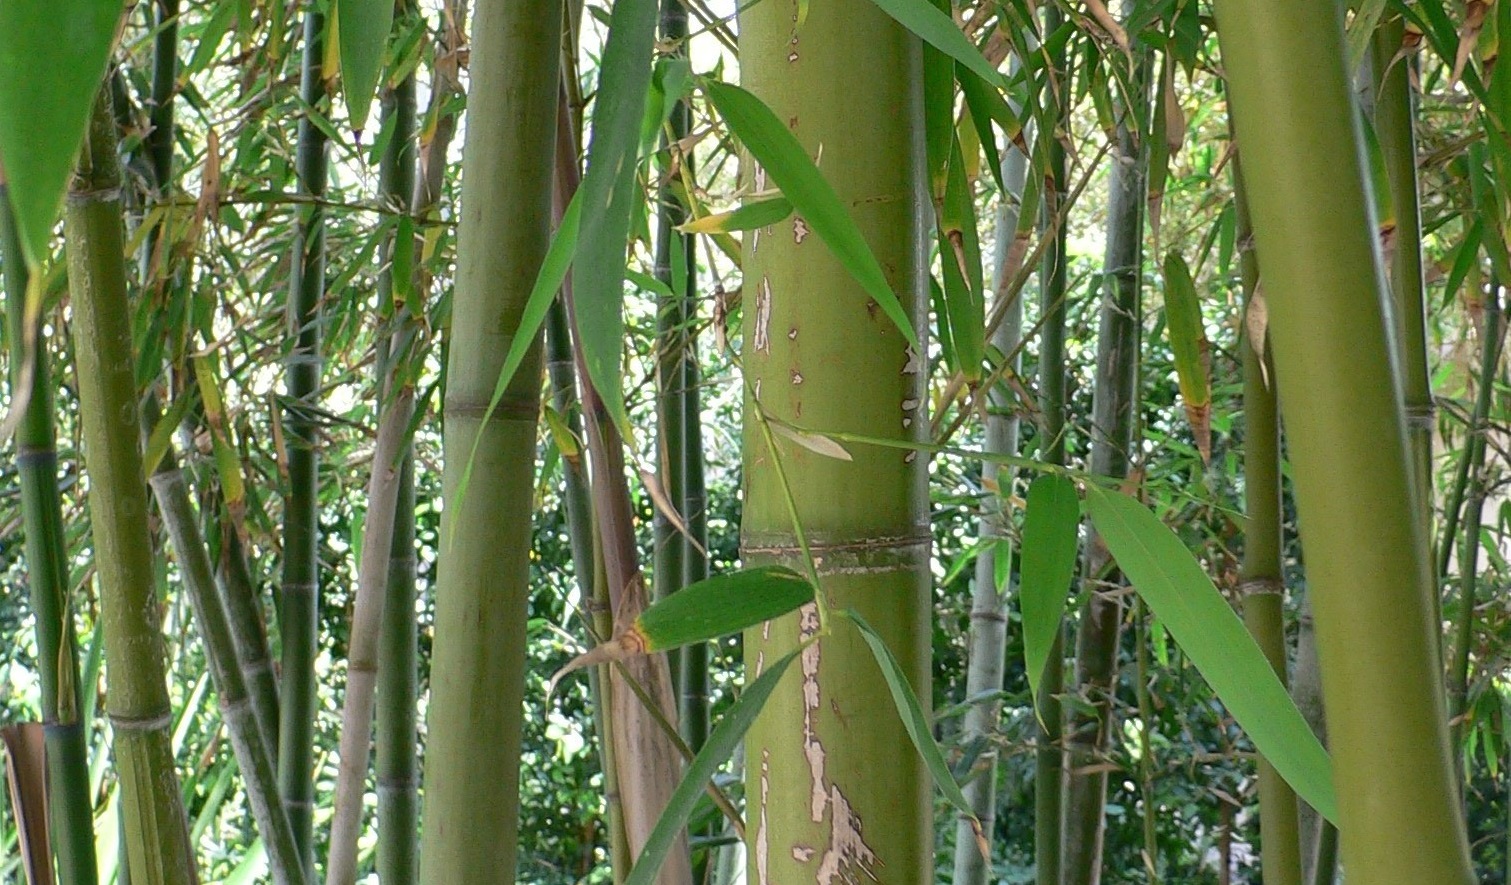 Cette espèce de bambou qui fleurit tous les 120 ans est un mystère pour les chercheurs